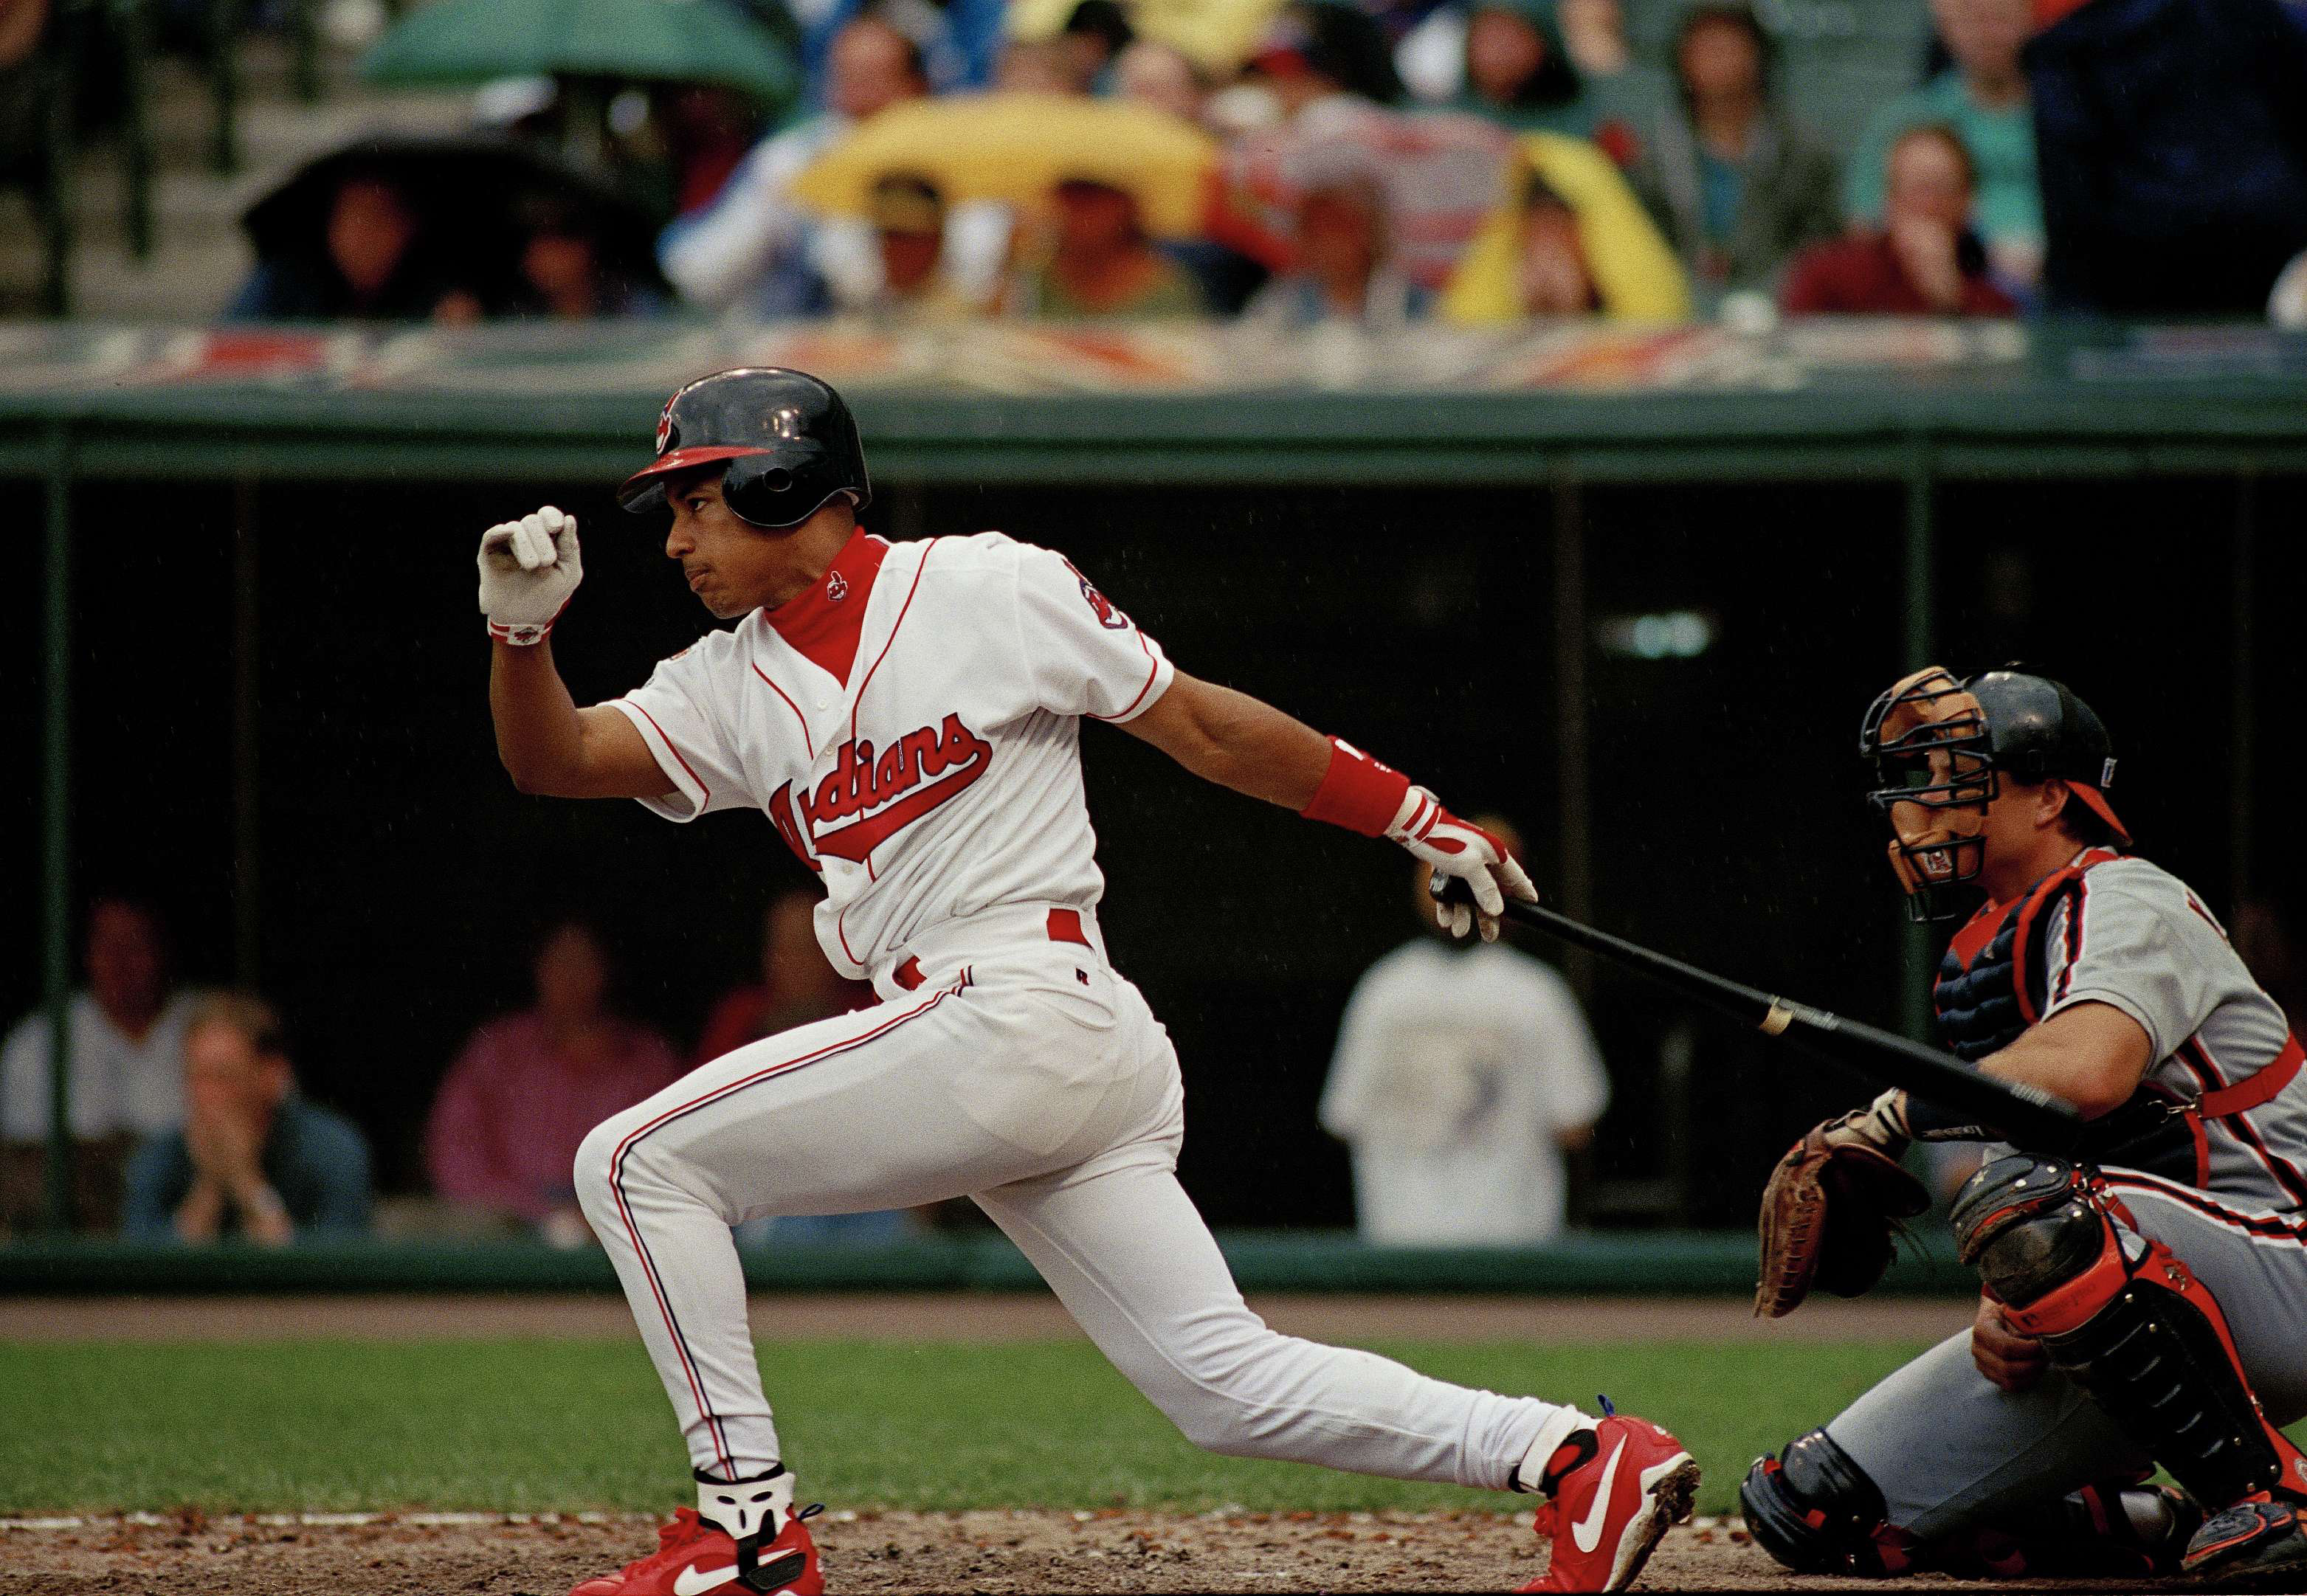 LatinoBaseball News: Manny Ramirez inducted into Cleveland Hall of Fame -  Latino Baseball